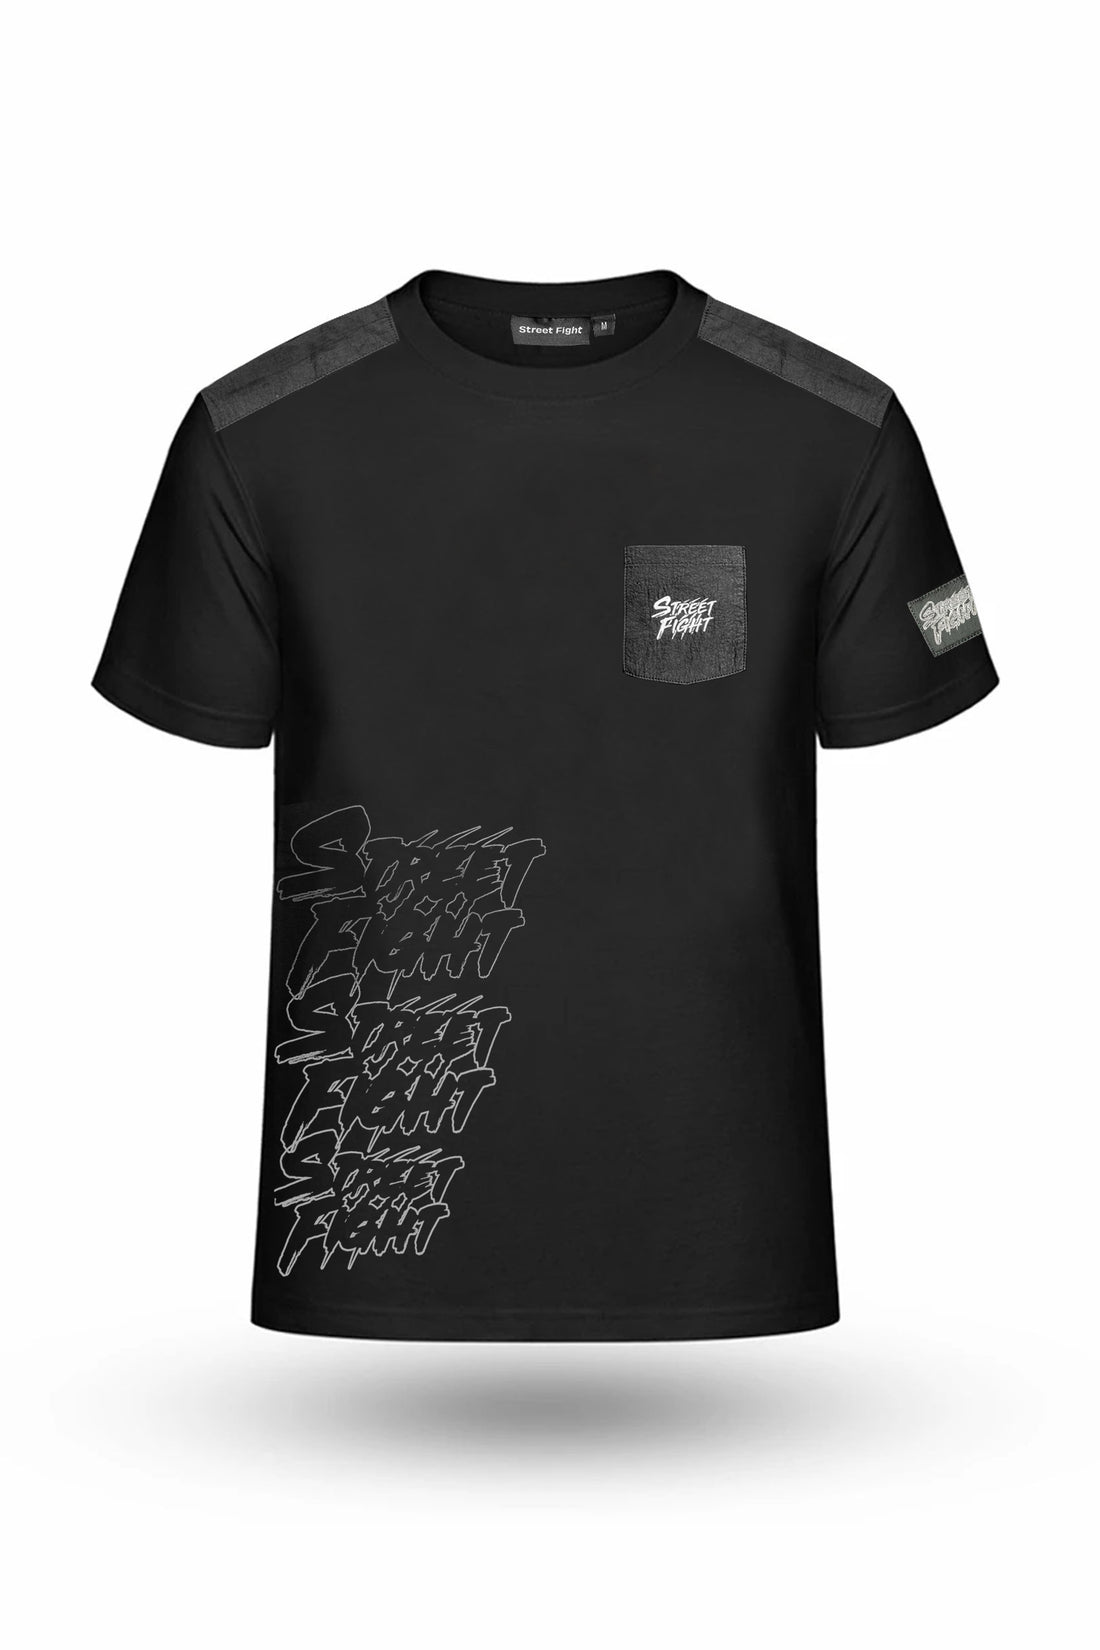 Nouveau T-shirt StreetFight "Milano" Noir/noir